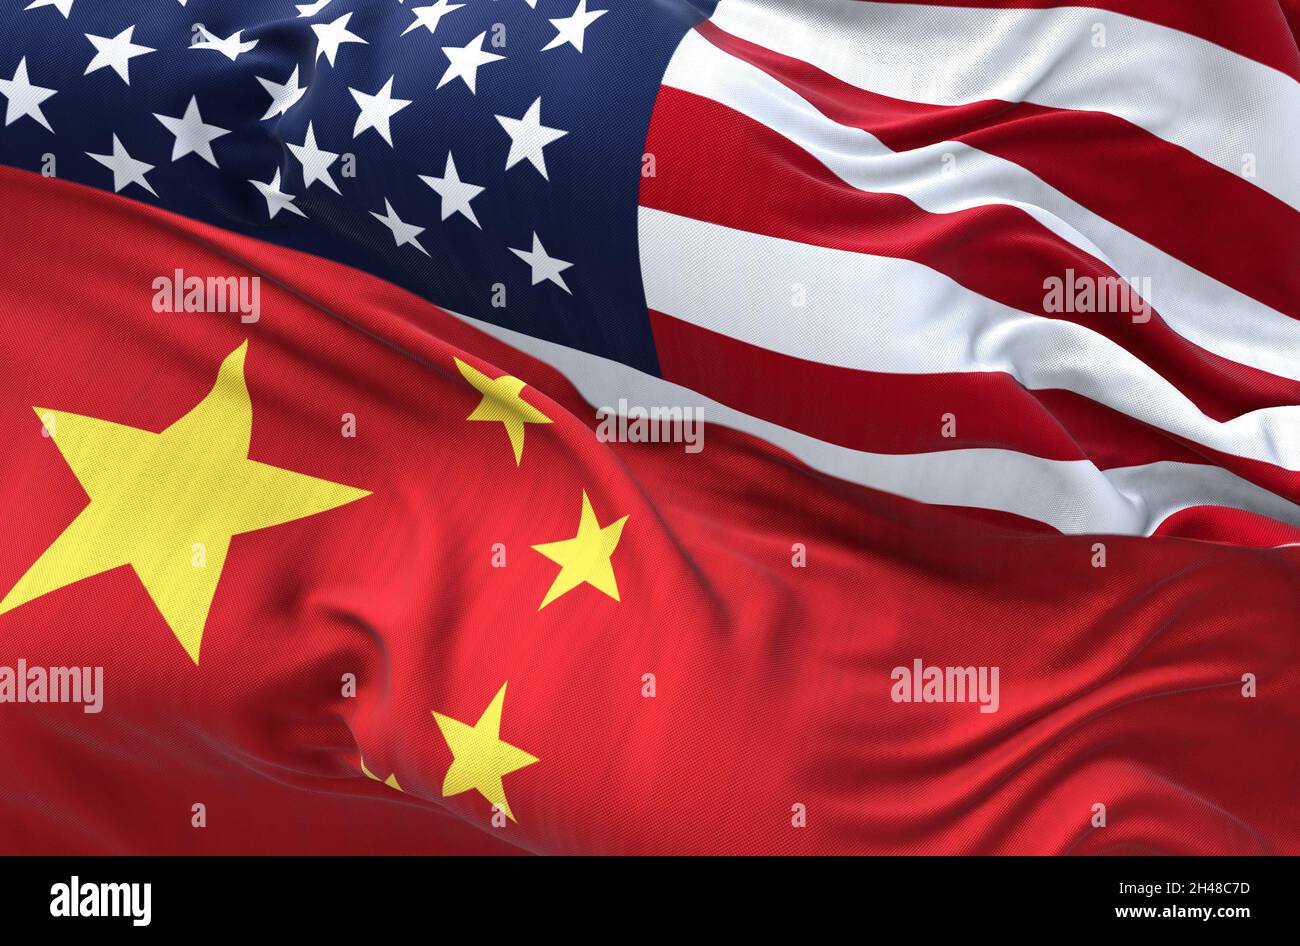 Les drapeaux de la Chine et des États-Unis d'Amérique agitant.Relations internationales et diplomatie. Banque D'Images